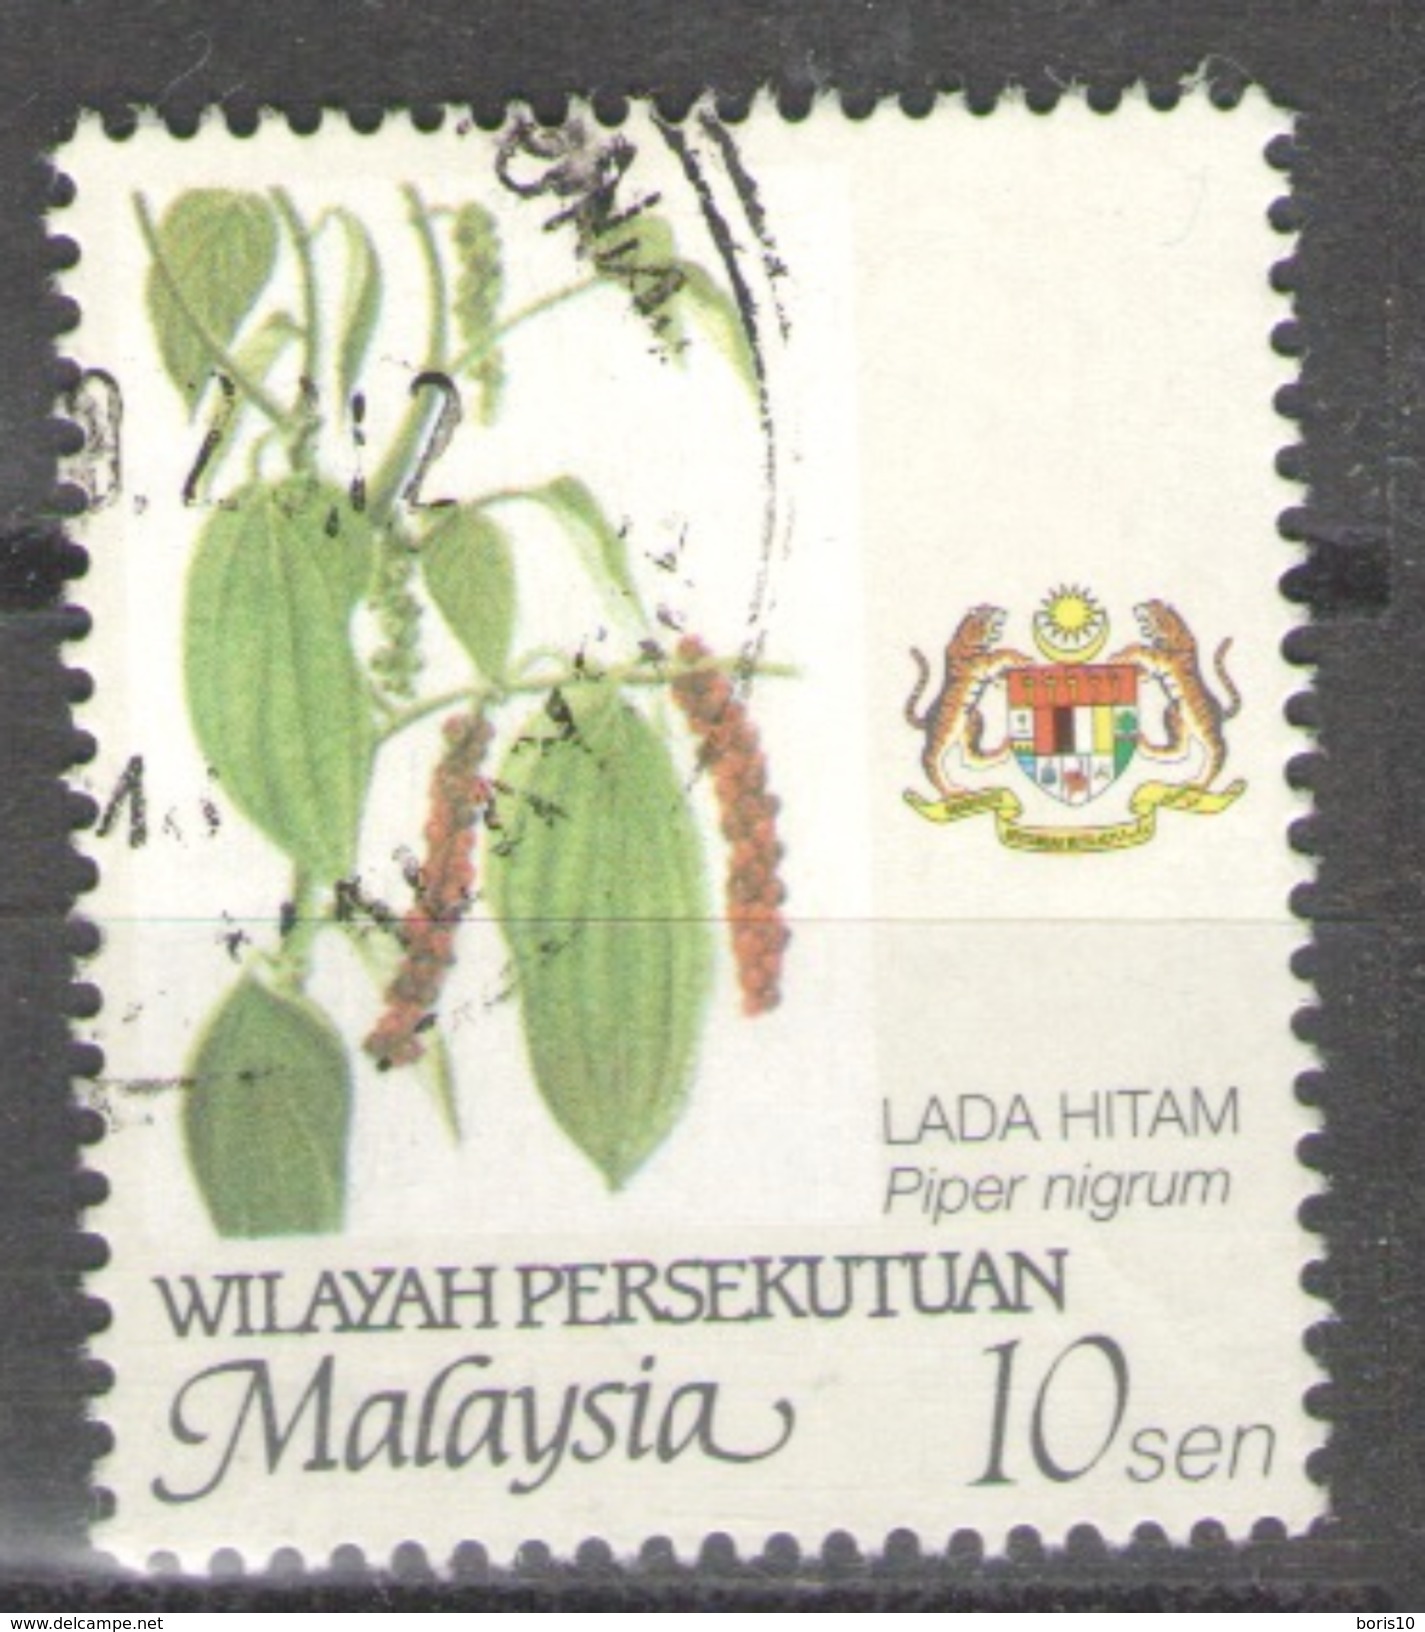 Malaysia Wilayah Persekutuan Used 2002 Farming - Value In "sen" Piper Nigrum - Malaysia (1964-...)